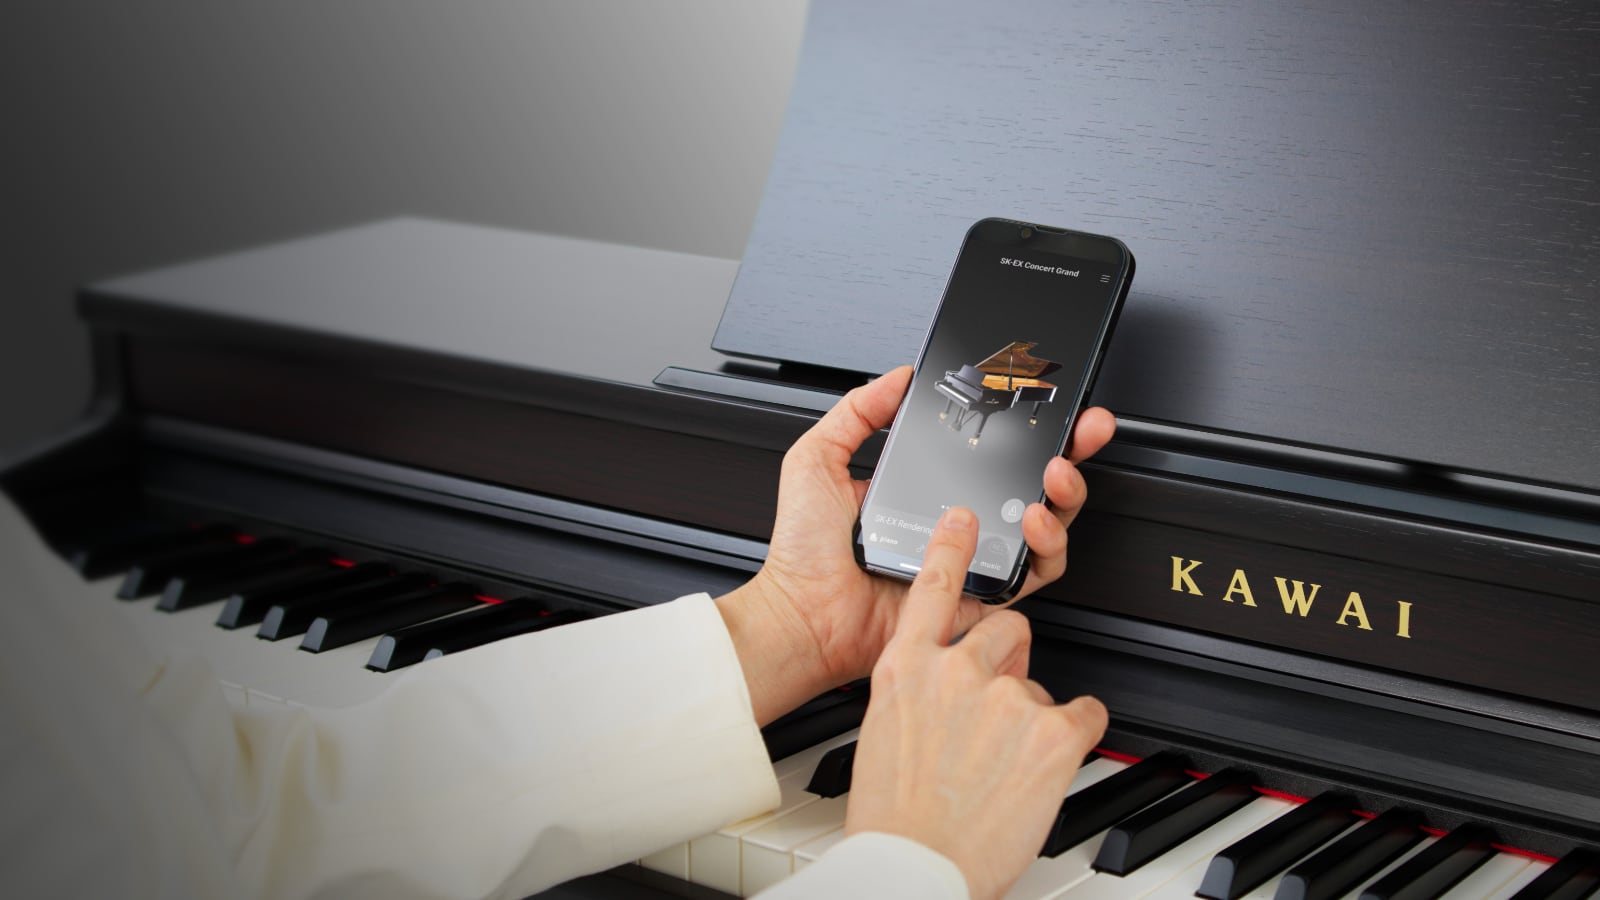 Kawai Piano-Remote - App für iOS & Android (Bildquelle: Kawai)